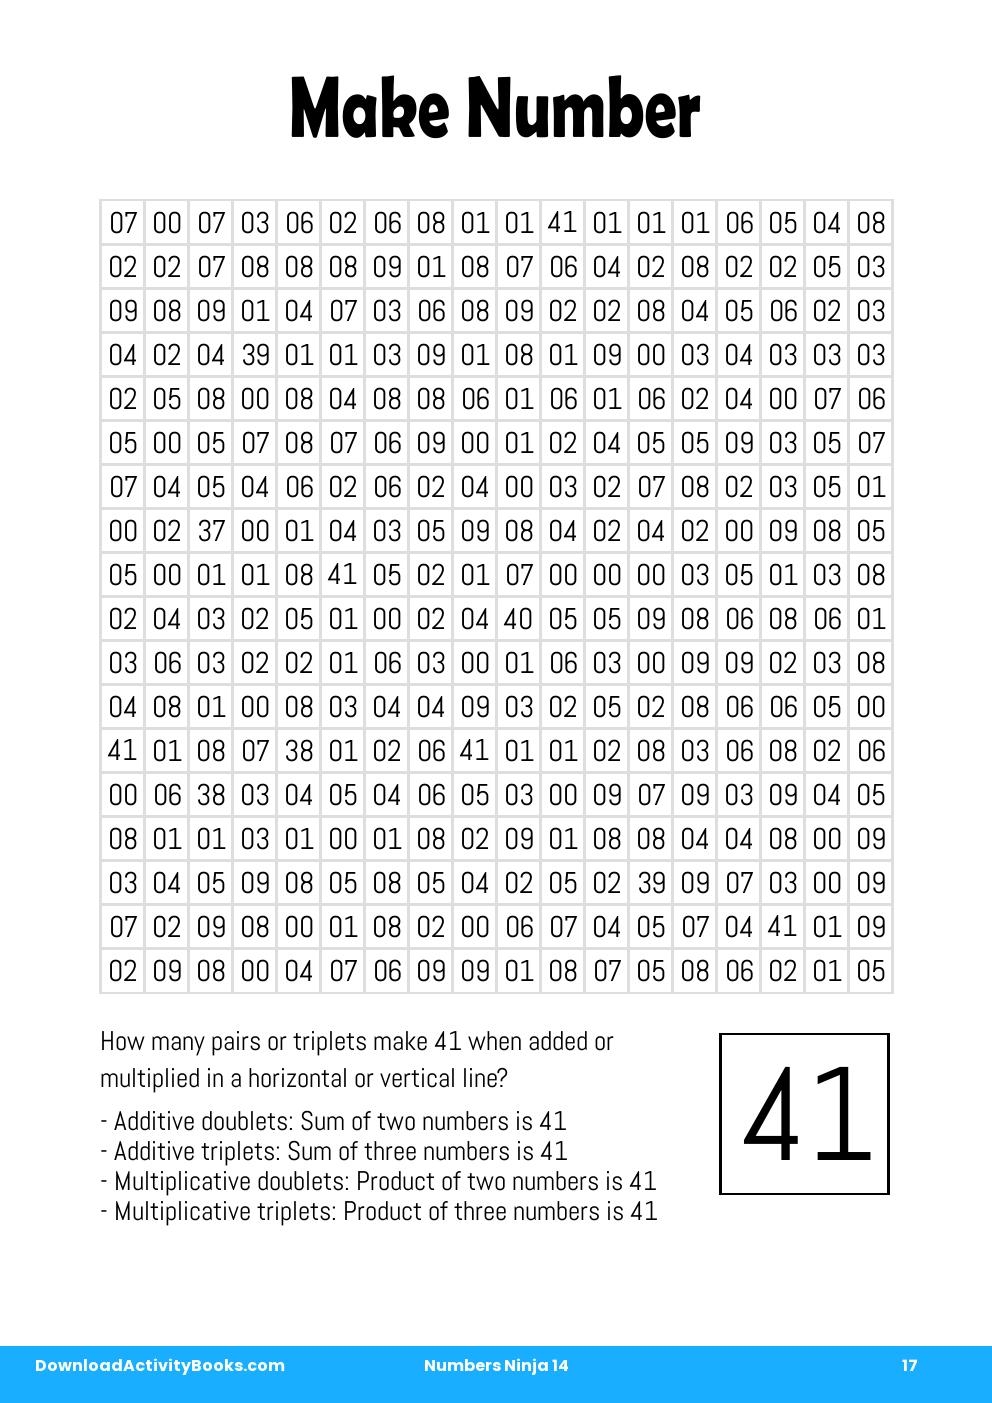 Make Number in Numbers Ninja 14